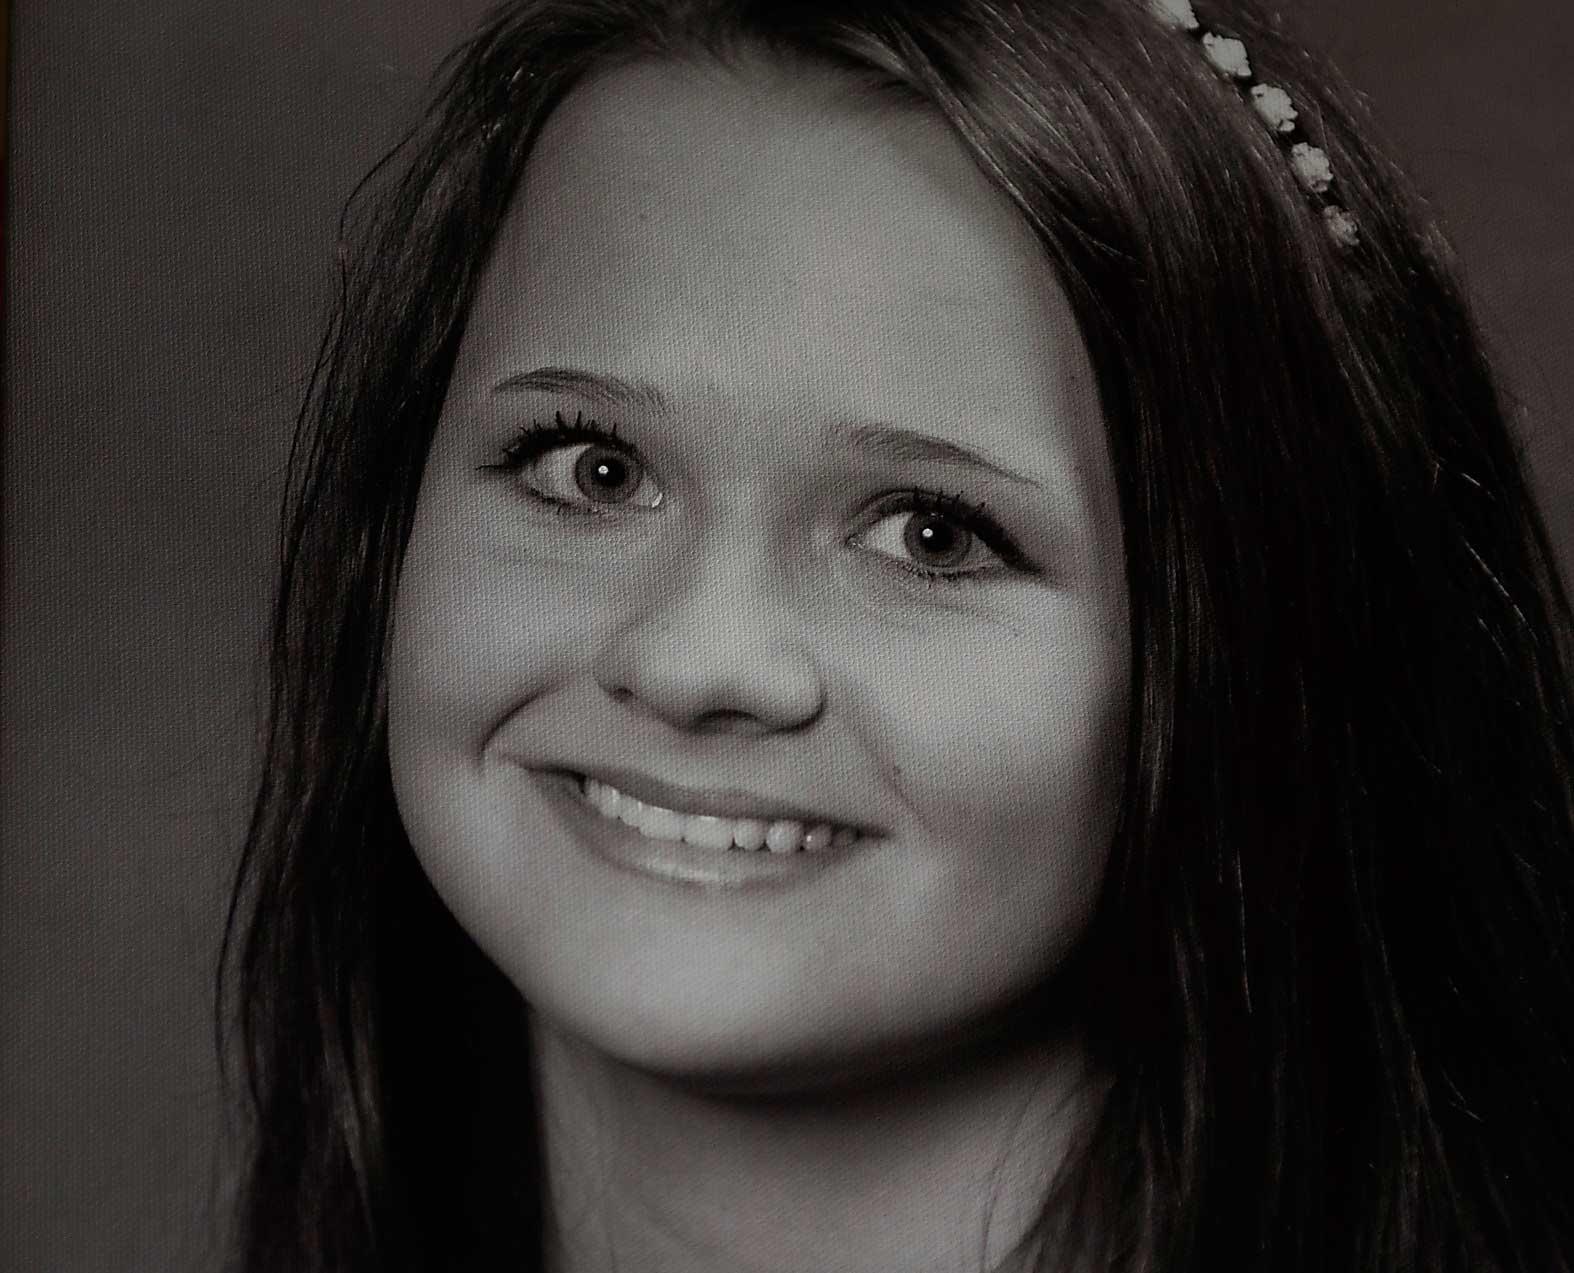 DOG Melinda, 16, hade Aspergers, men ville inte vara någon med ”en jävla diagnos”. Hon tog sitt liv den 3 april 2013.